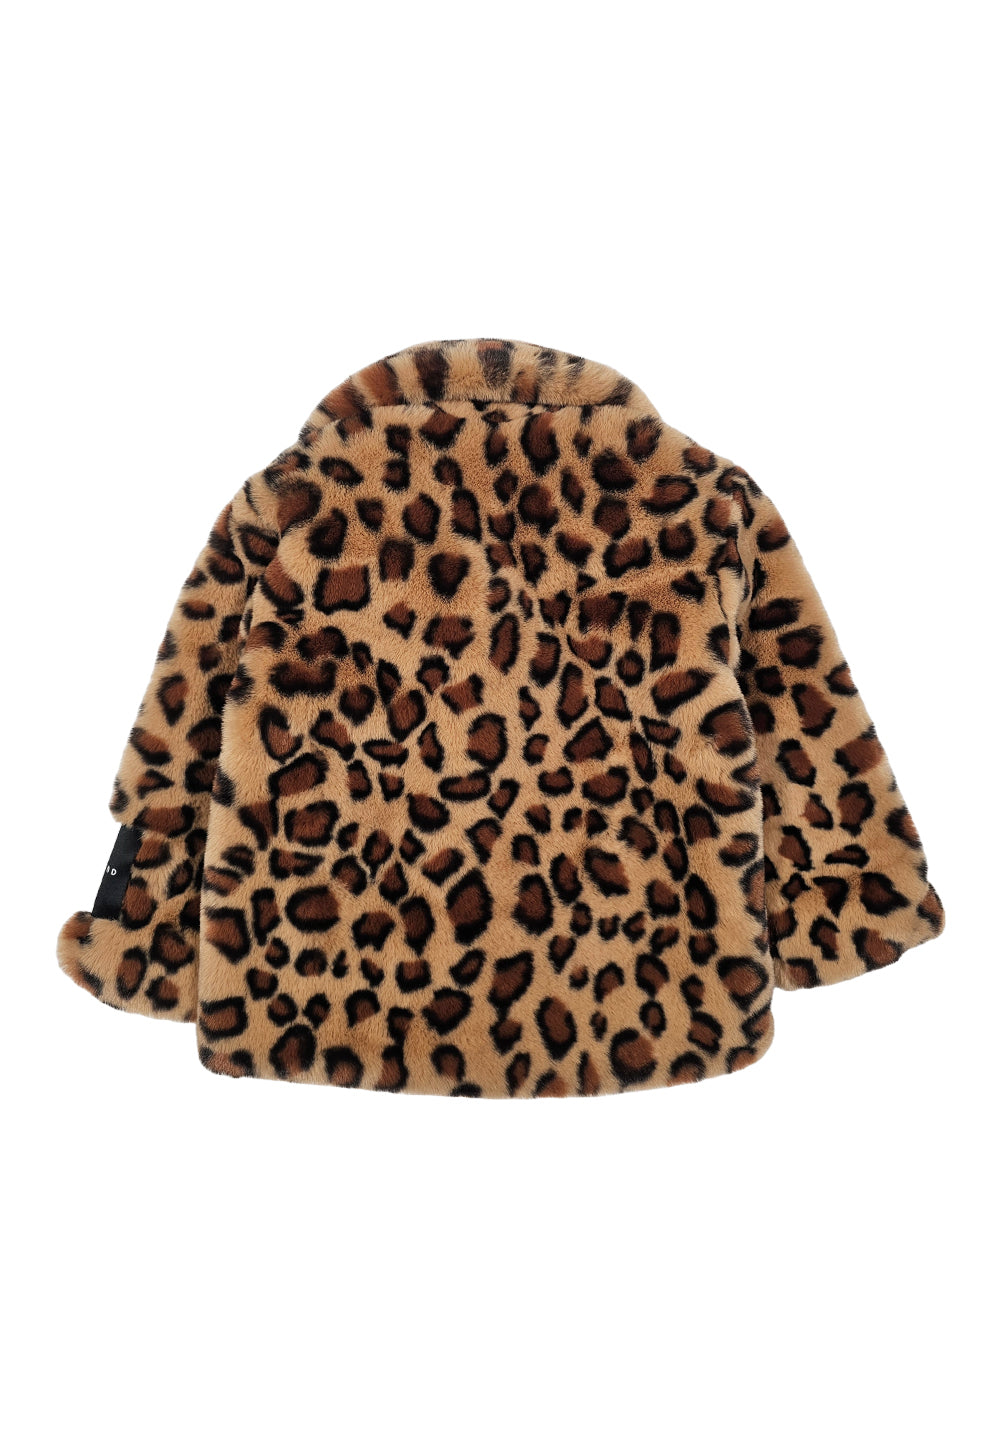 Leopard jacket for girls